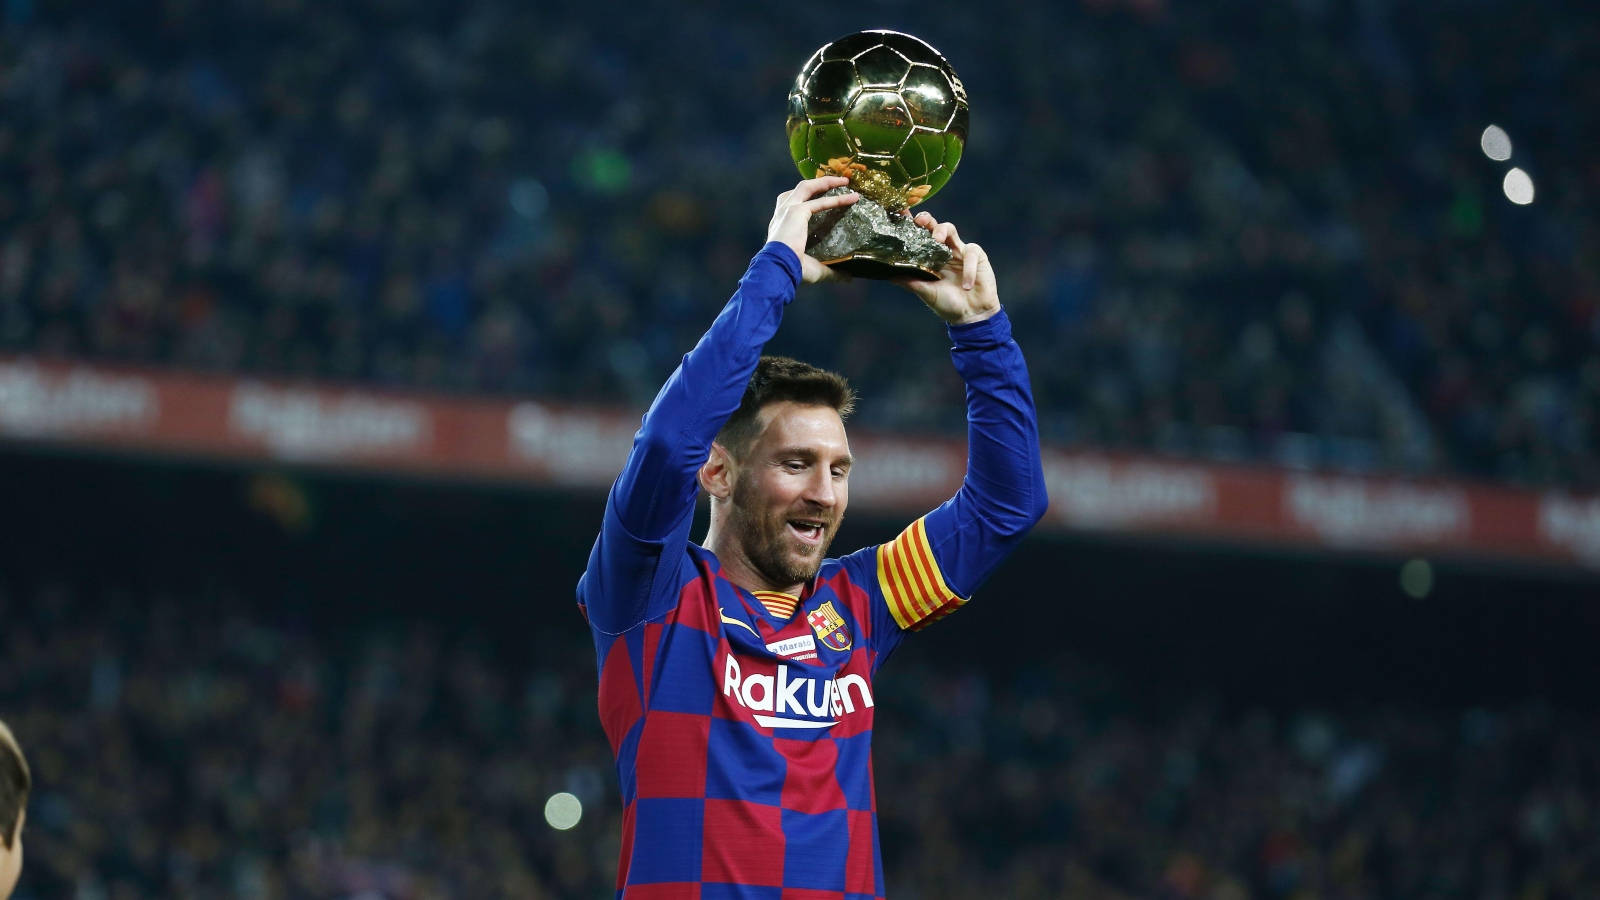 Messi2021 Zeigt Den Ballon D'or. Wallpaper